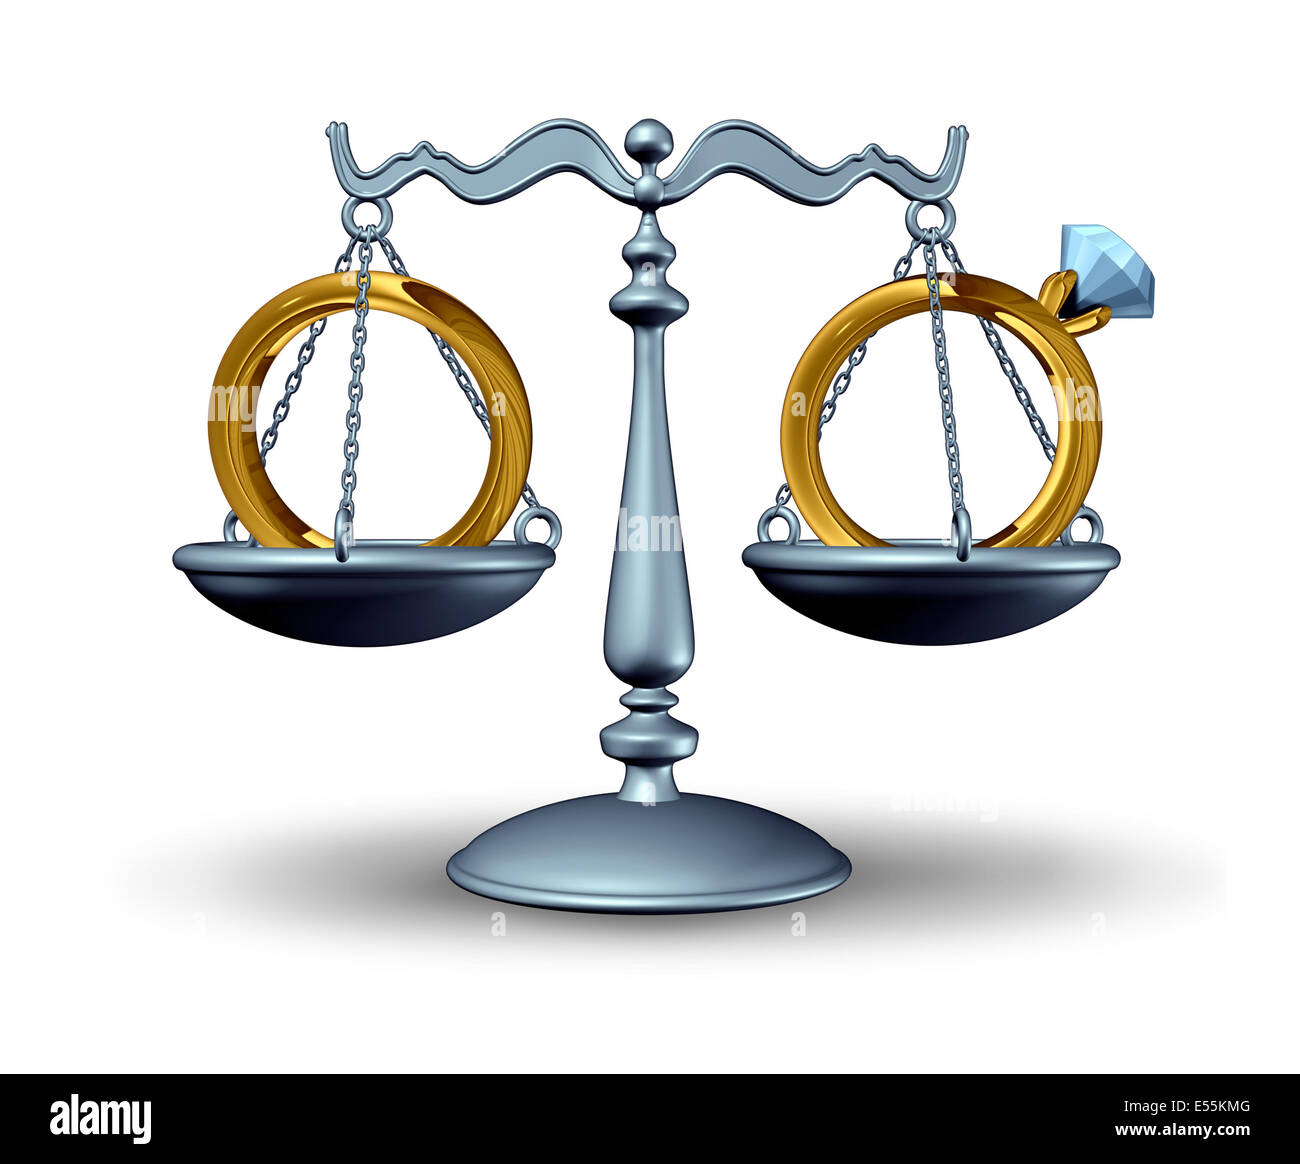 Ehevertrag Vereinbarung und Scheidung Begriff als Gerechtigkeit Waage mit Trauringe als Symbol für eine Beziehung-Vertrag vor einer Ehe oder zivilen union oder immer geschieden. Stockfoto